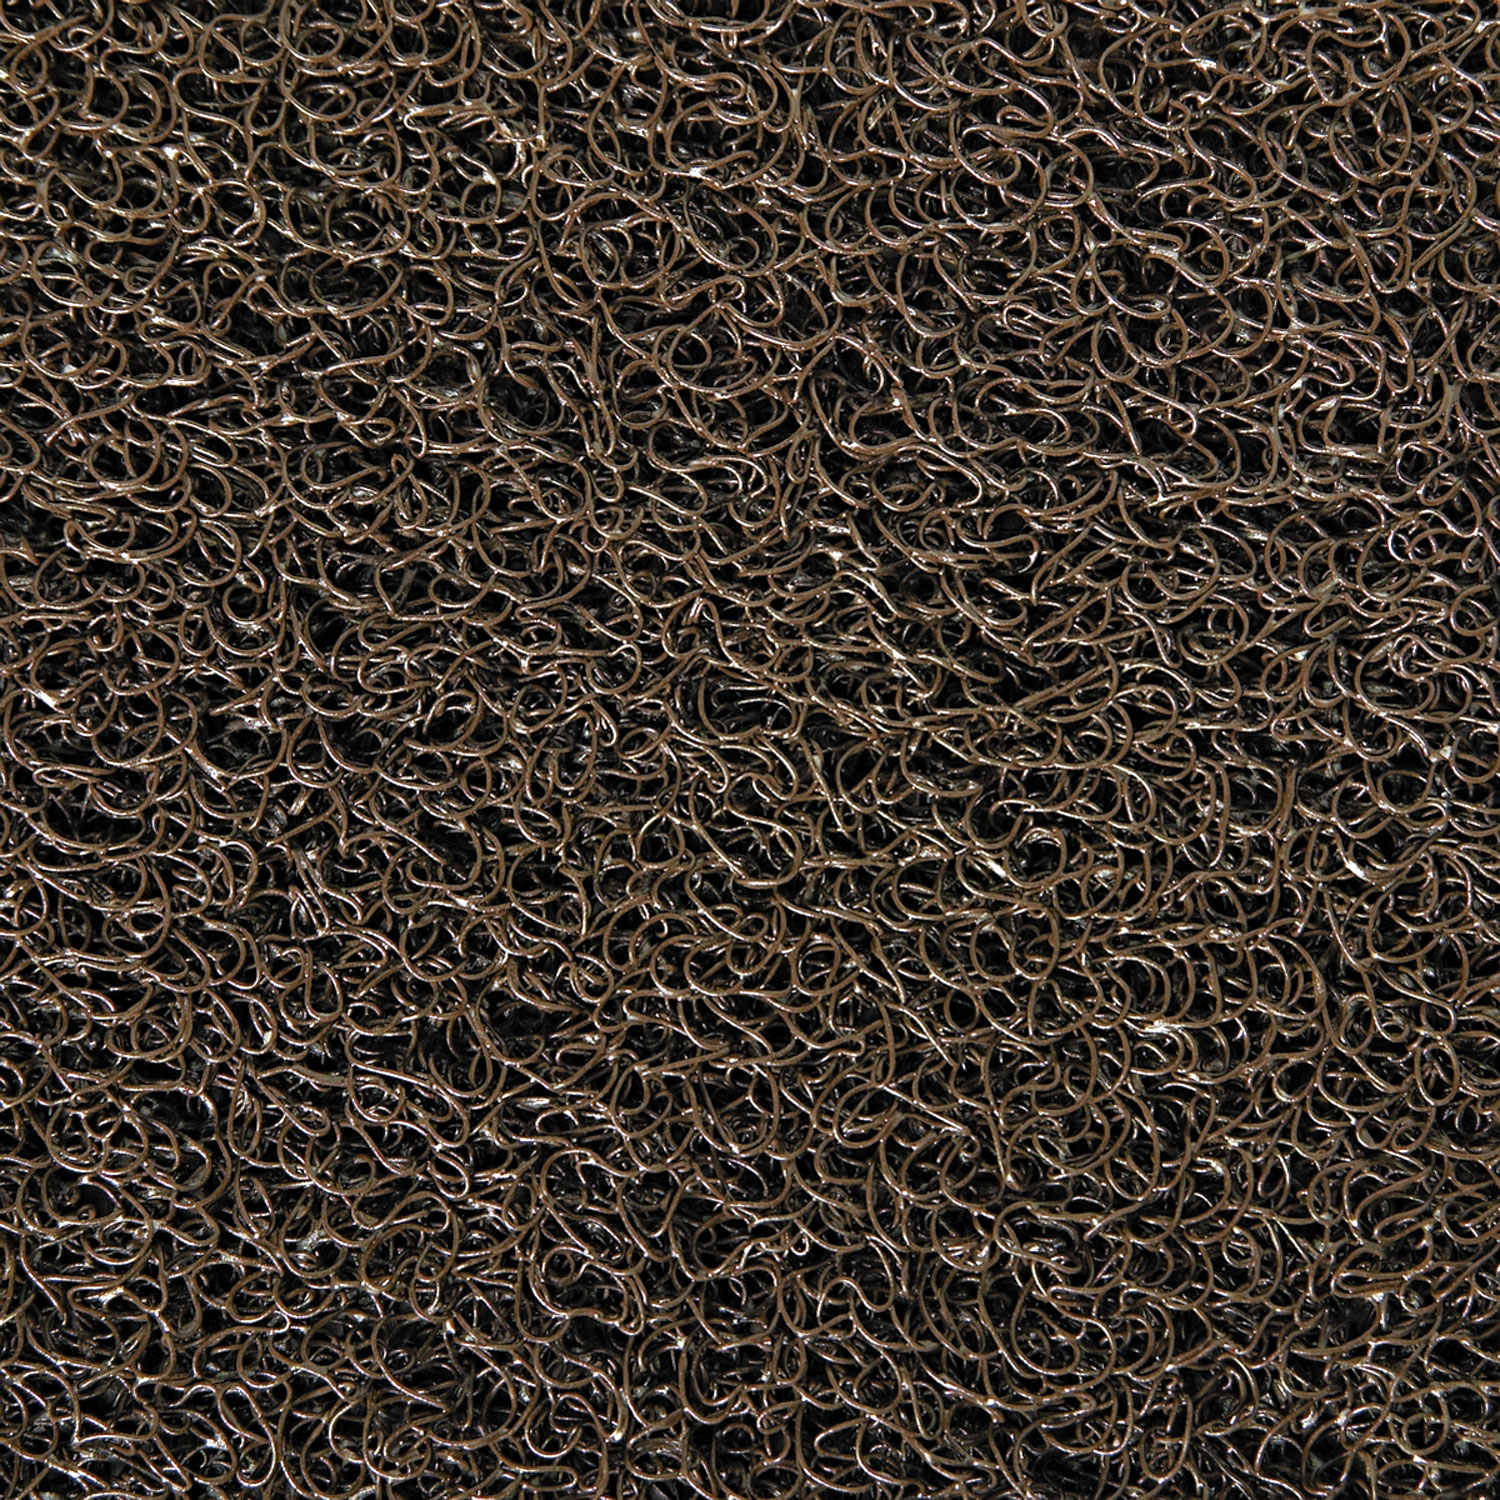 Dirt Stop Scraper Mat, Polypropylene, 36 x 60, Chestnut Brown